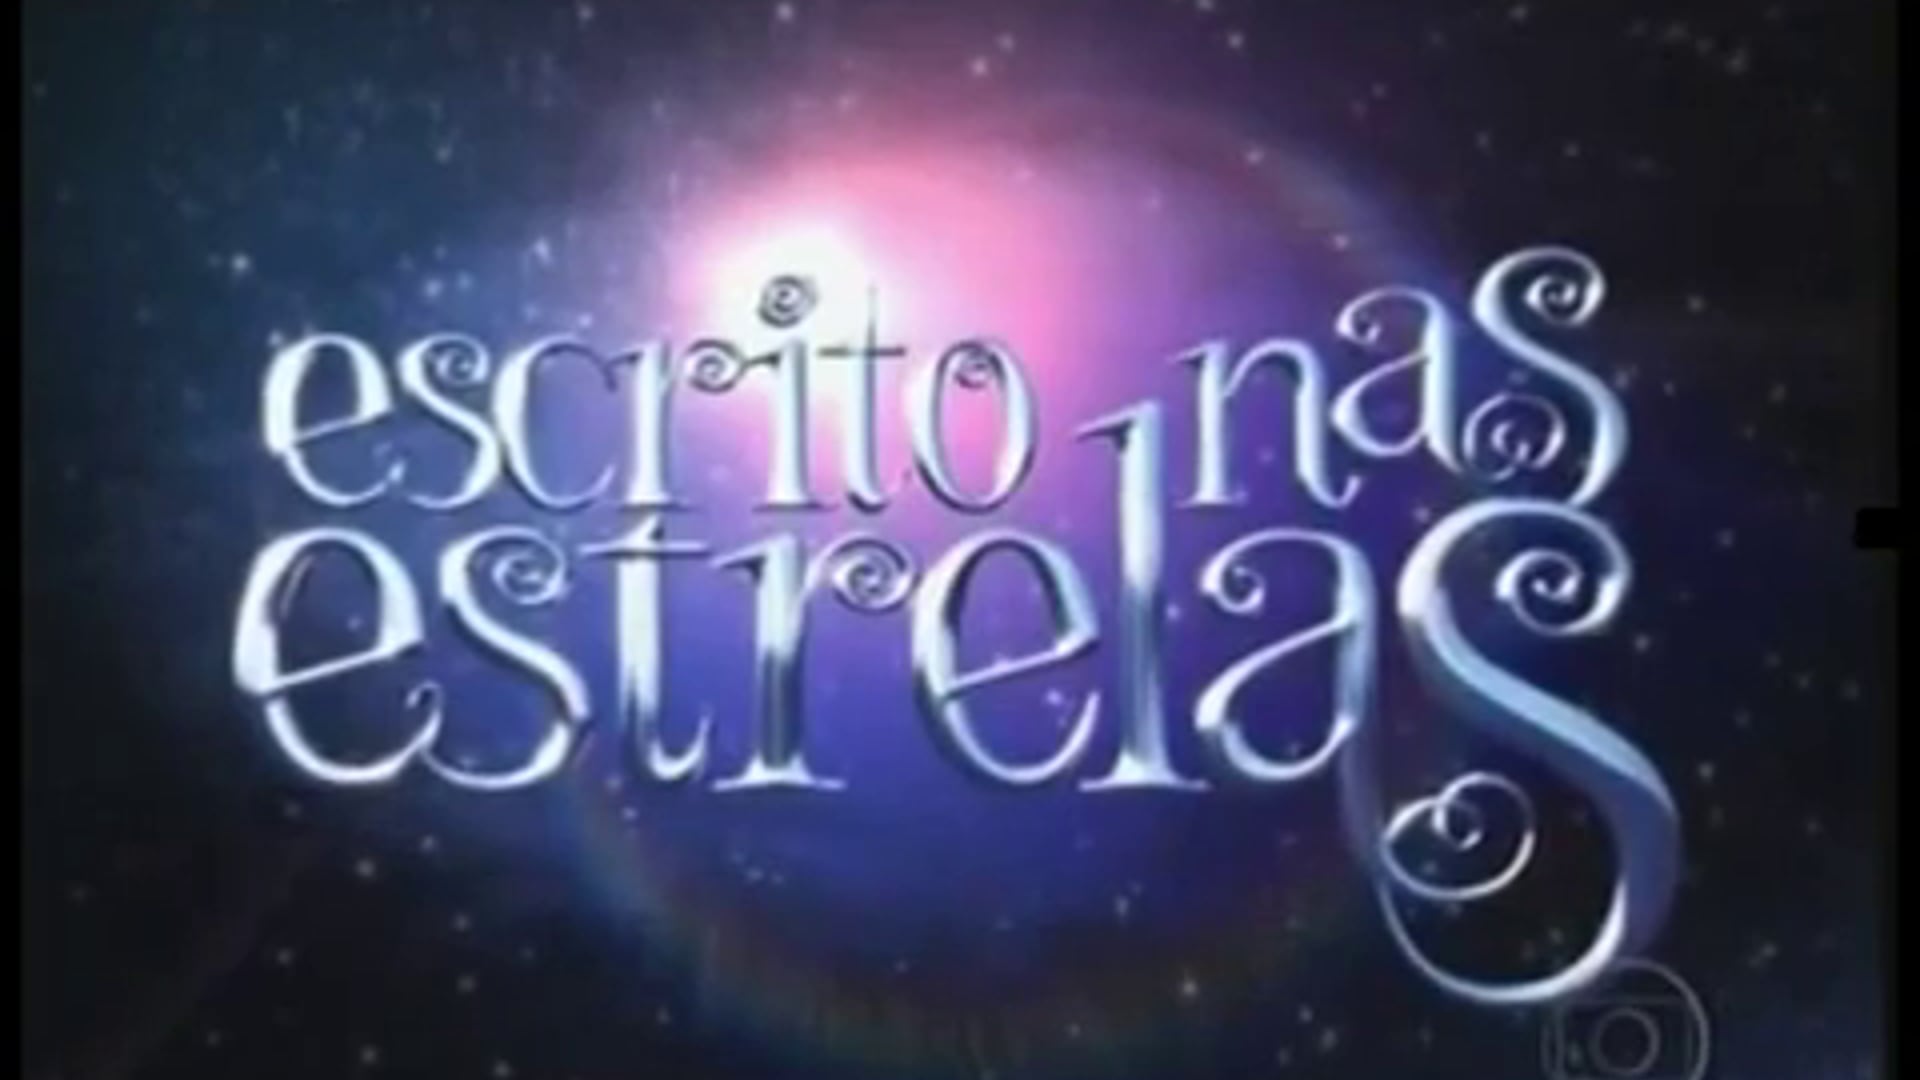 Hilton Castro - novela "Escrito nas Estrelas" personagem: Gerson